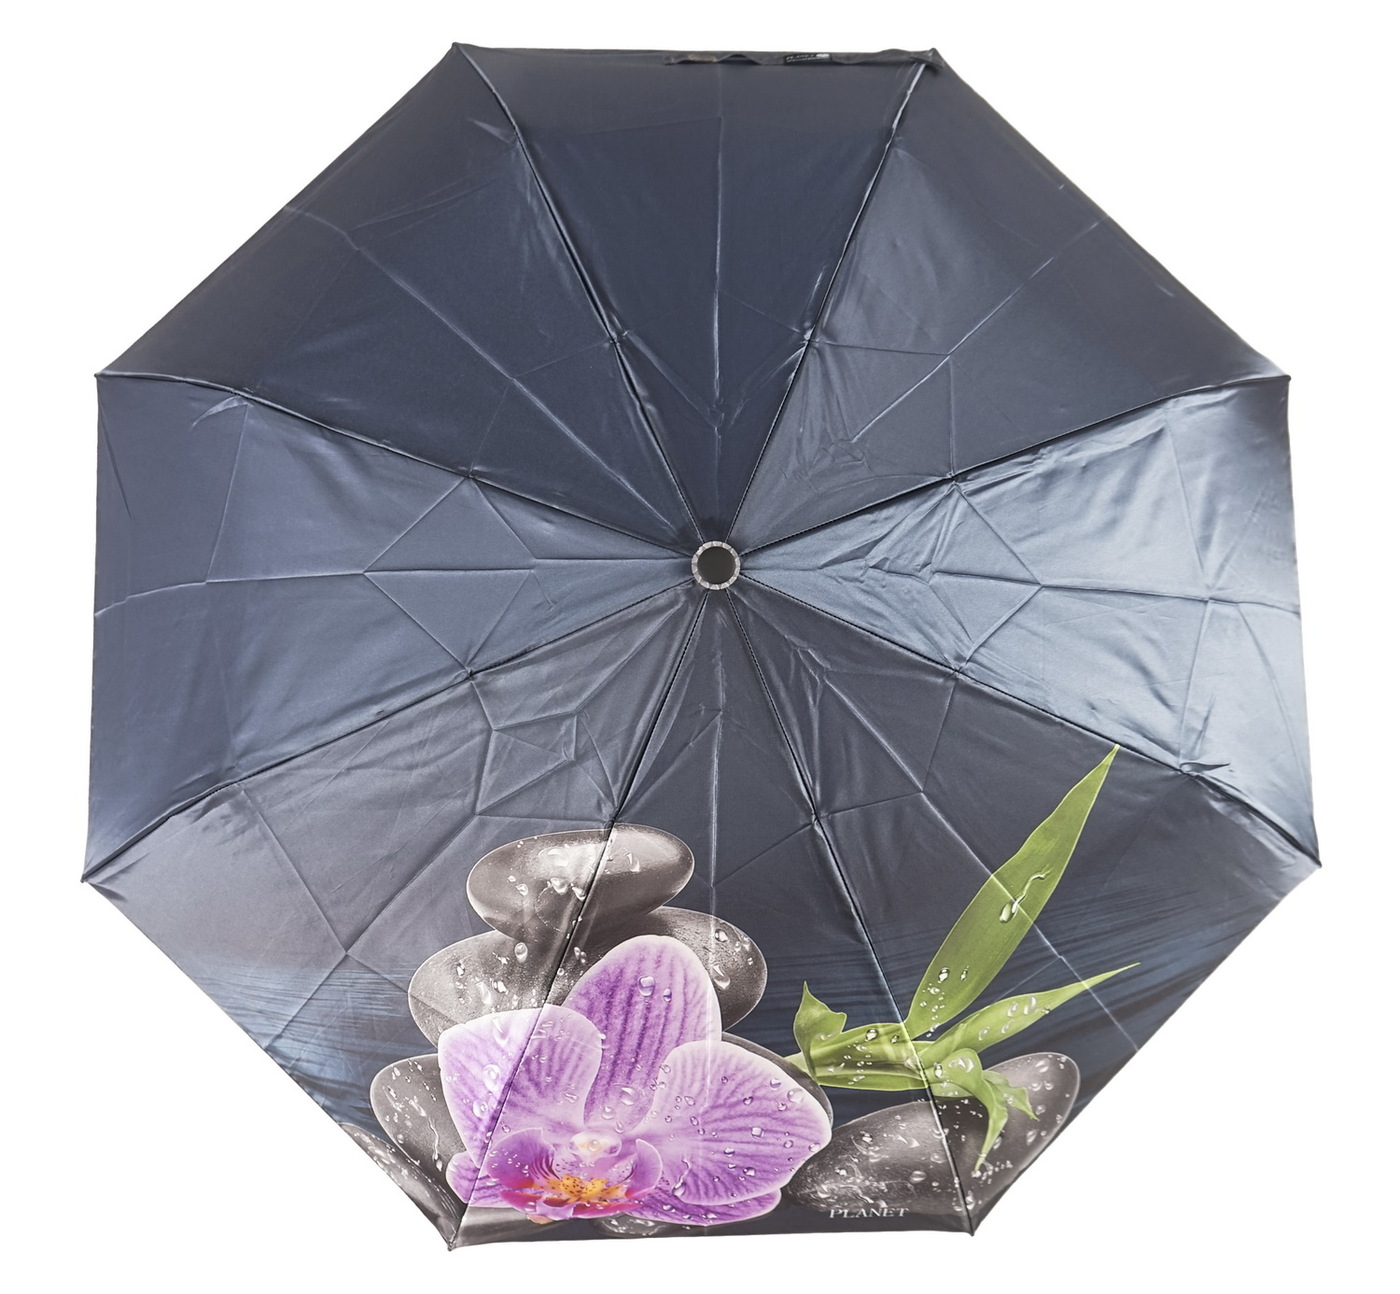 Магазины мужских зонтов. Зонт h2000+. Зонт Bizzotto Салерно 0795370. Isotoner зонт женский 09496. Зонт Bizzotto Салерно 0795712.